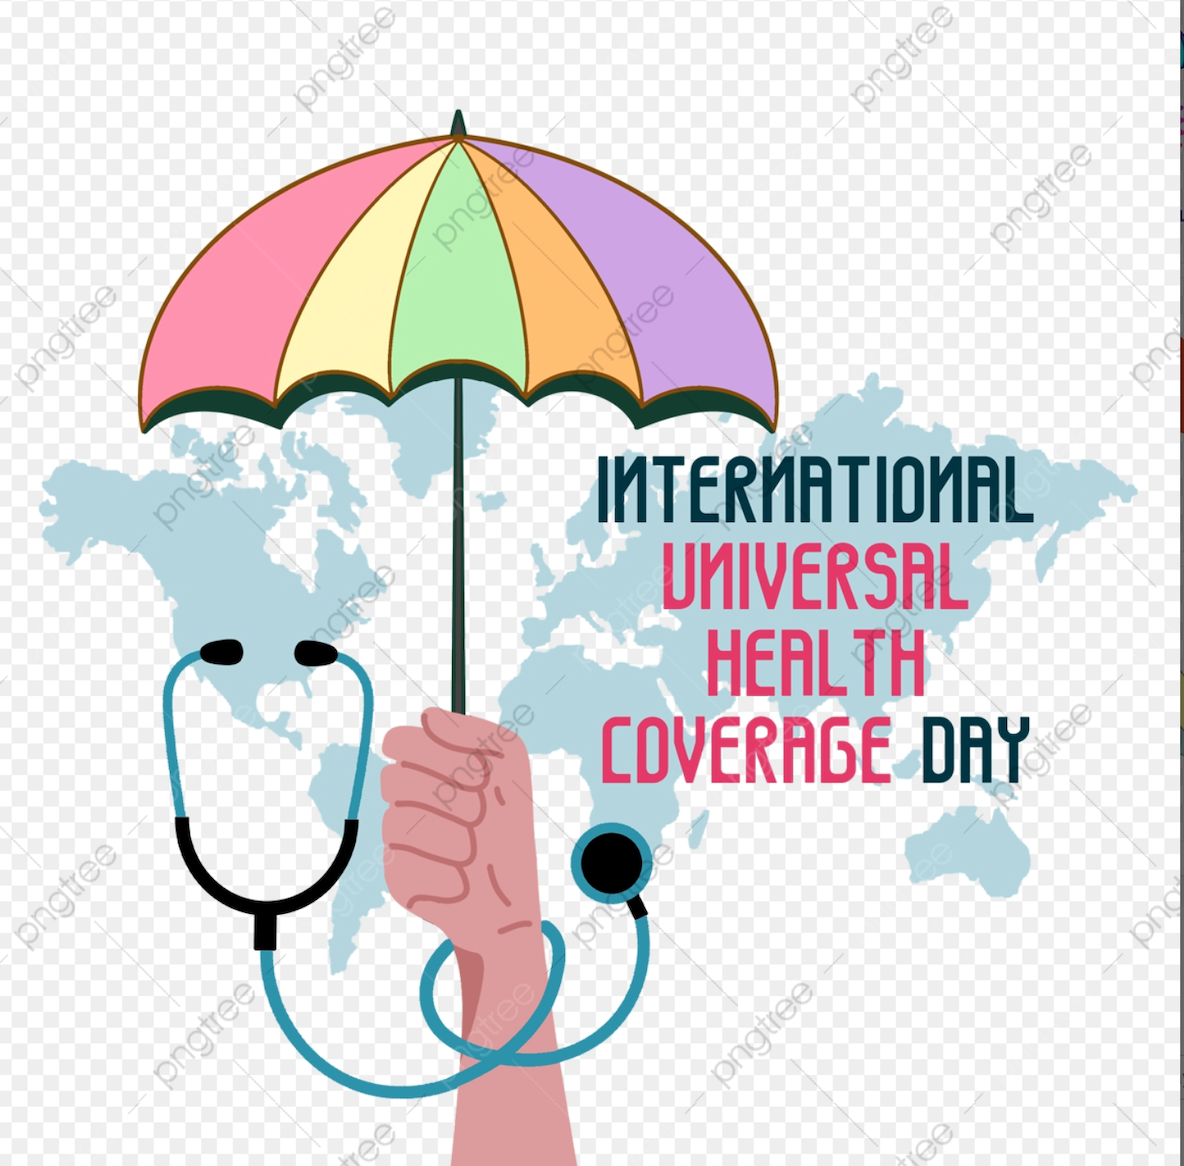 Somalia celebra el Día de la Cobertura Sanitaria Universal: hacer realidad el sueño de "salud para todos